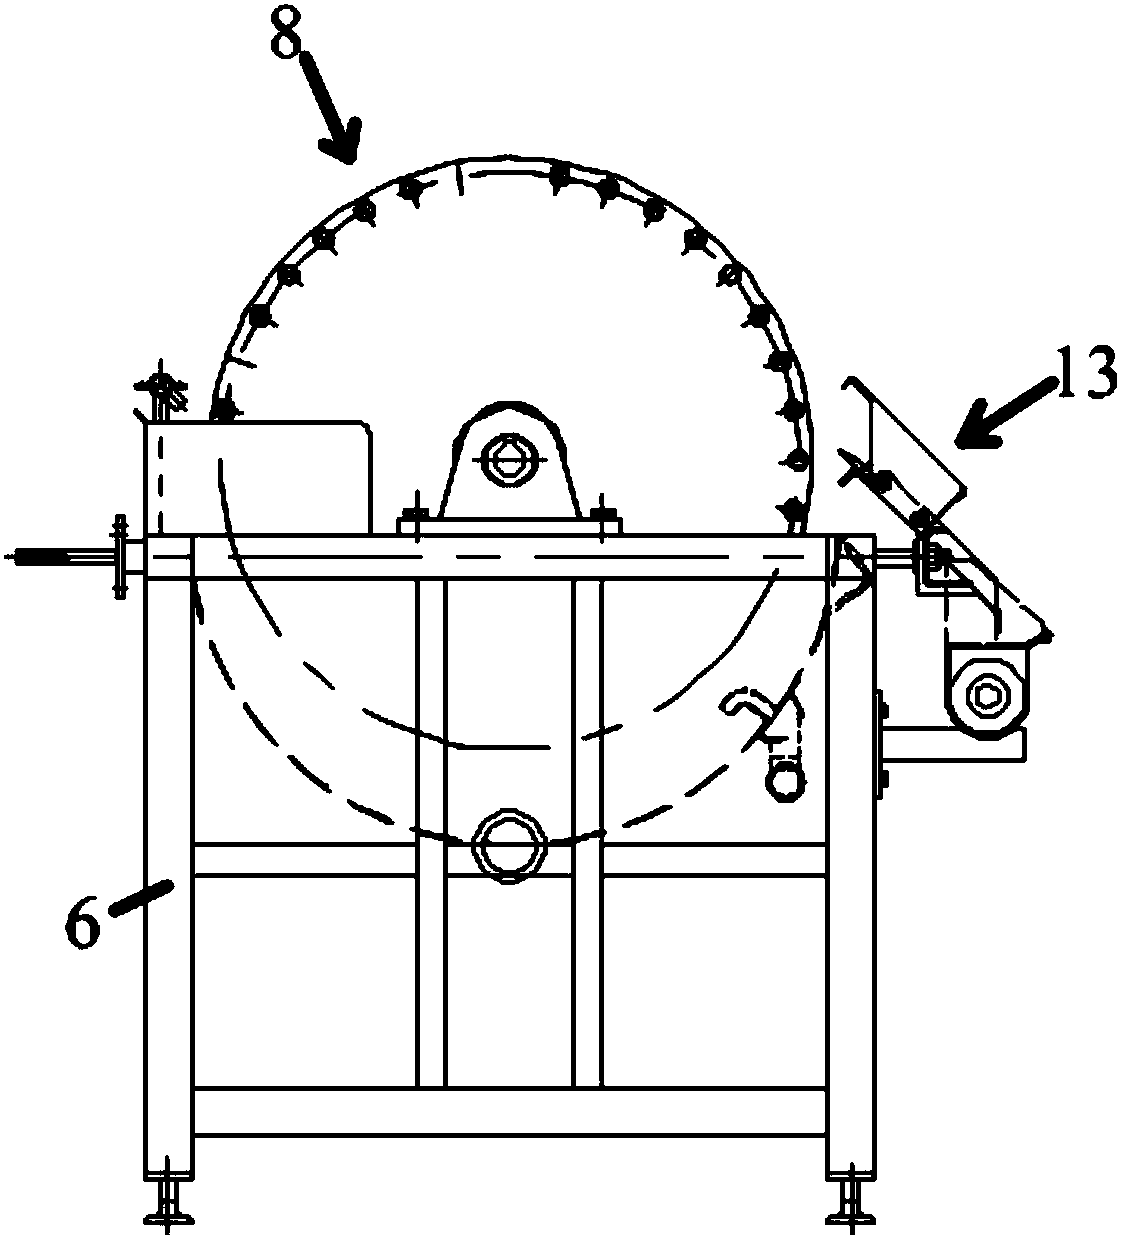 Vacuum drum filtering system